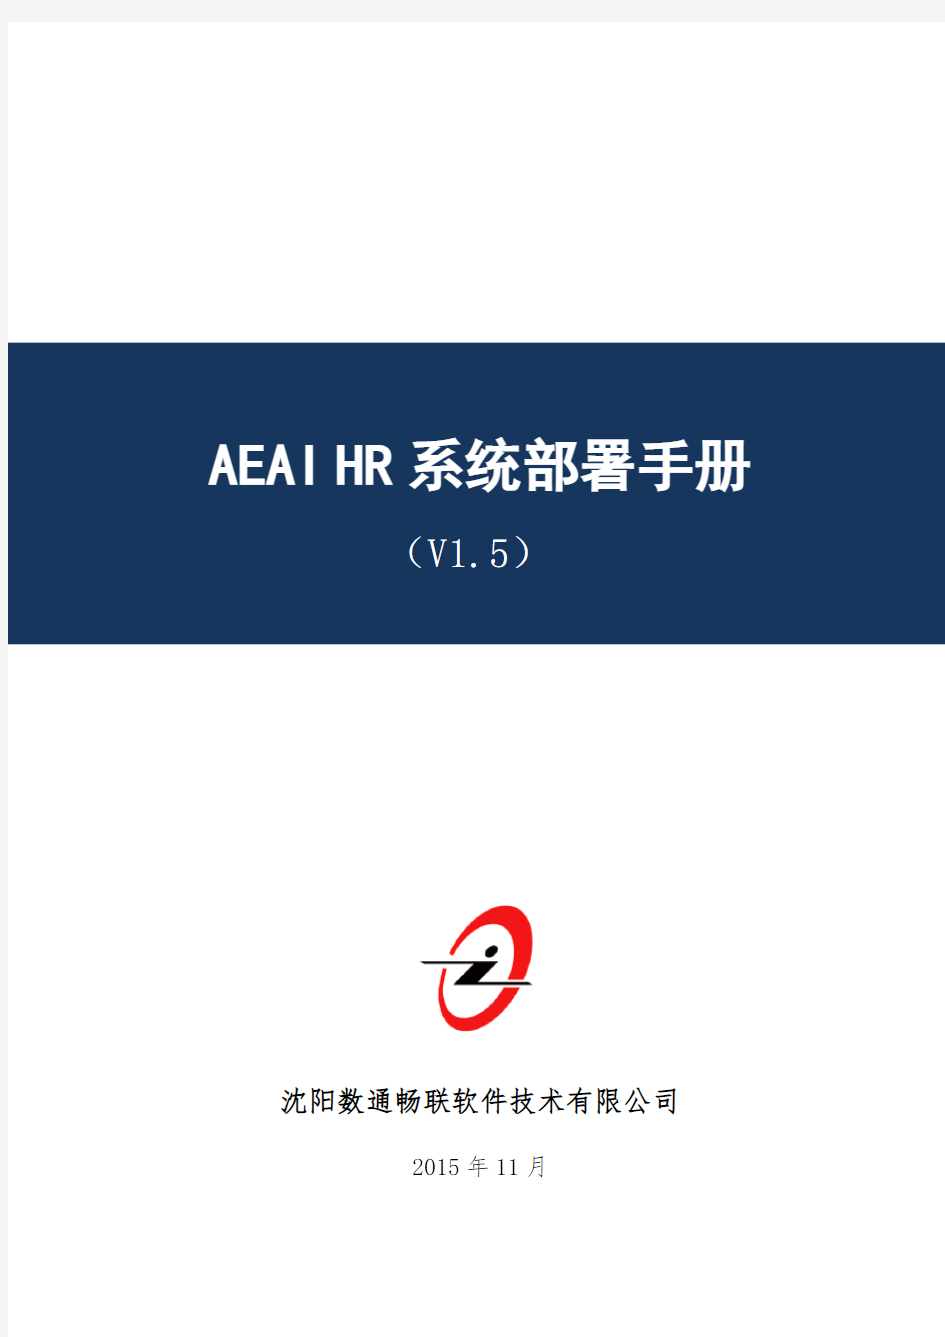 AEAI HR系统部署手册